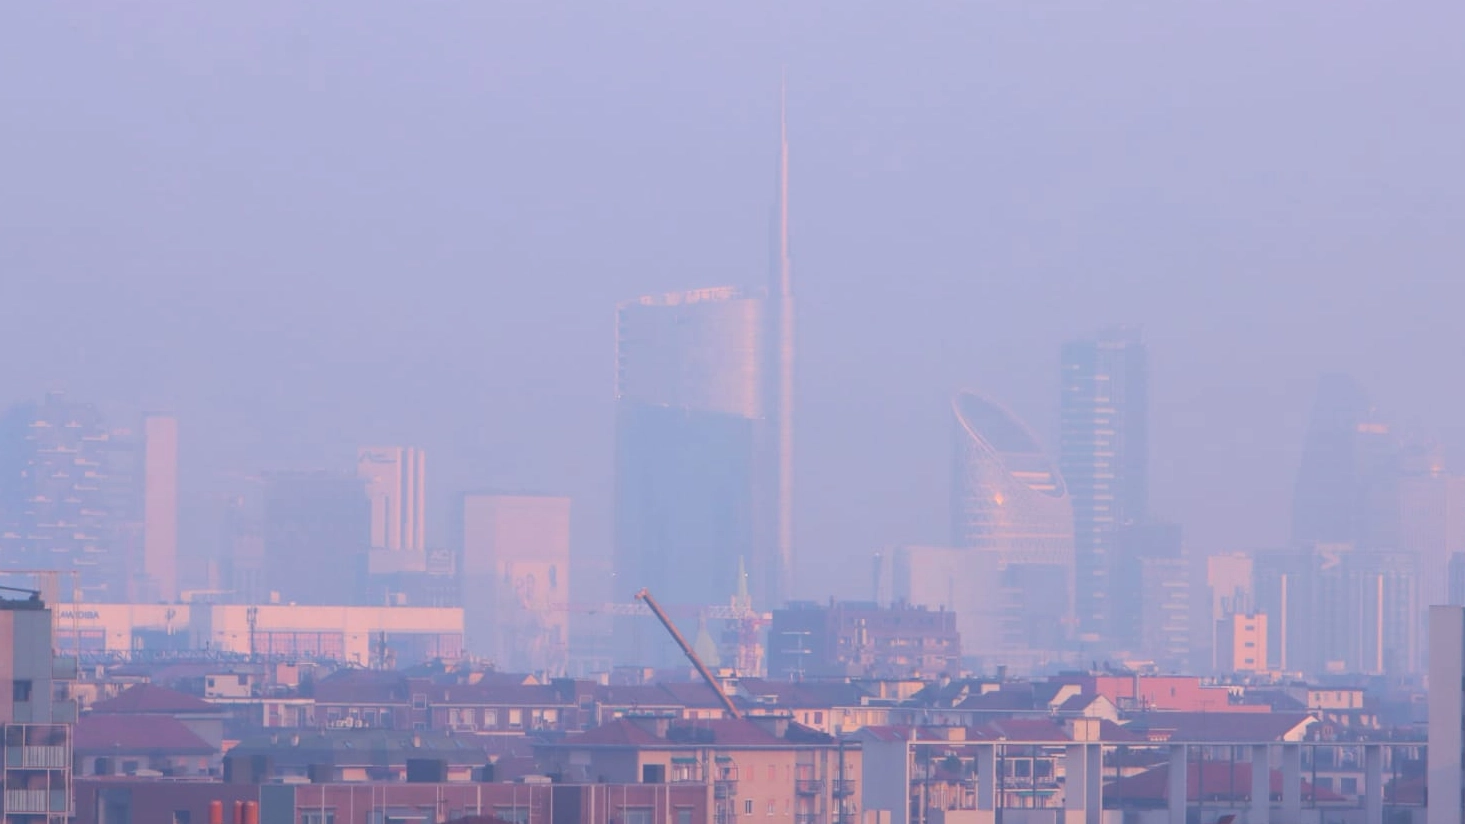 La coltre di inquinamento che il 19 febbraio attanagliava Milano (Ansa/Paolo Salmoirago)